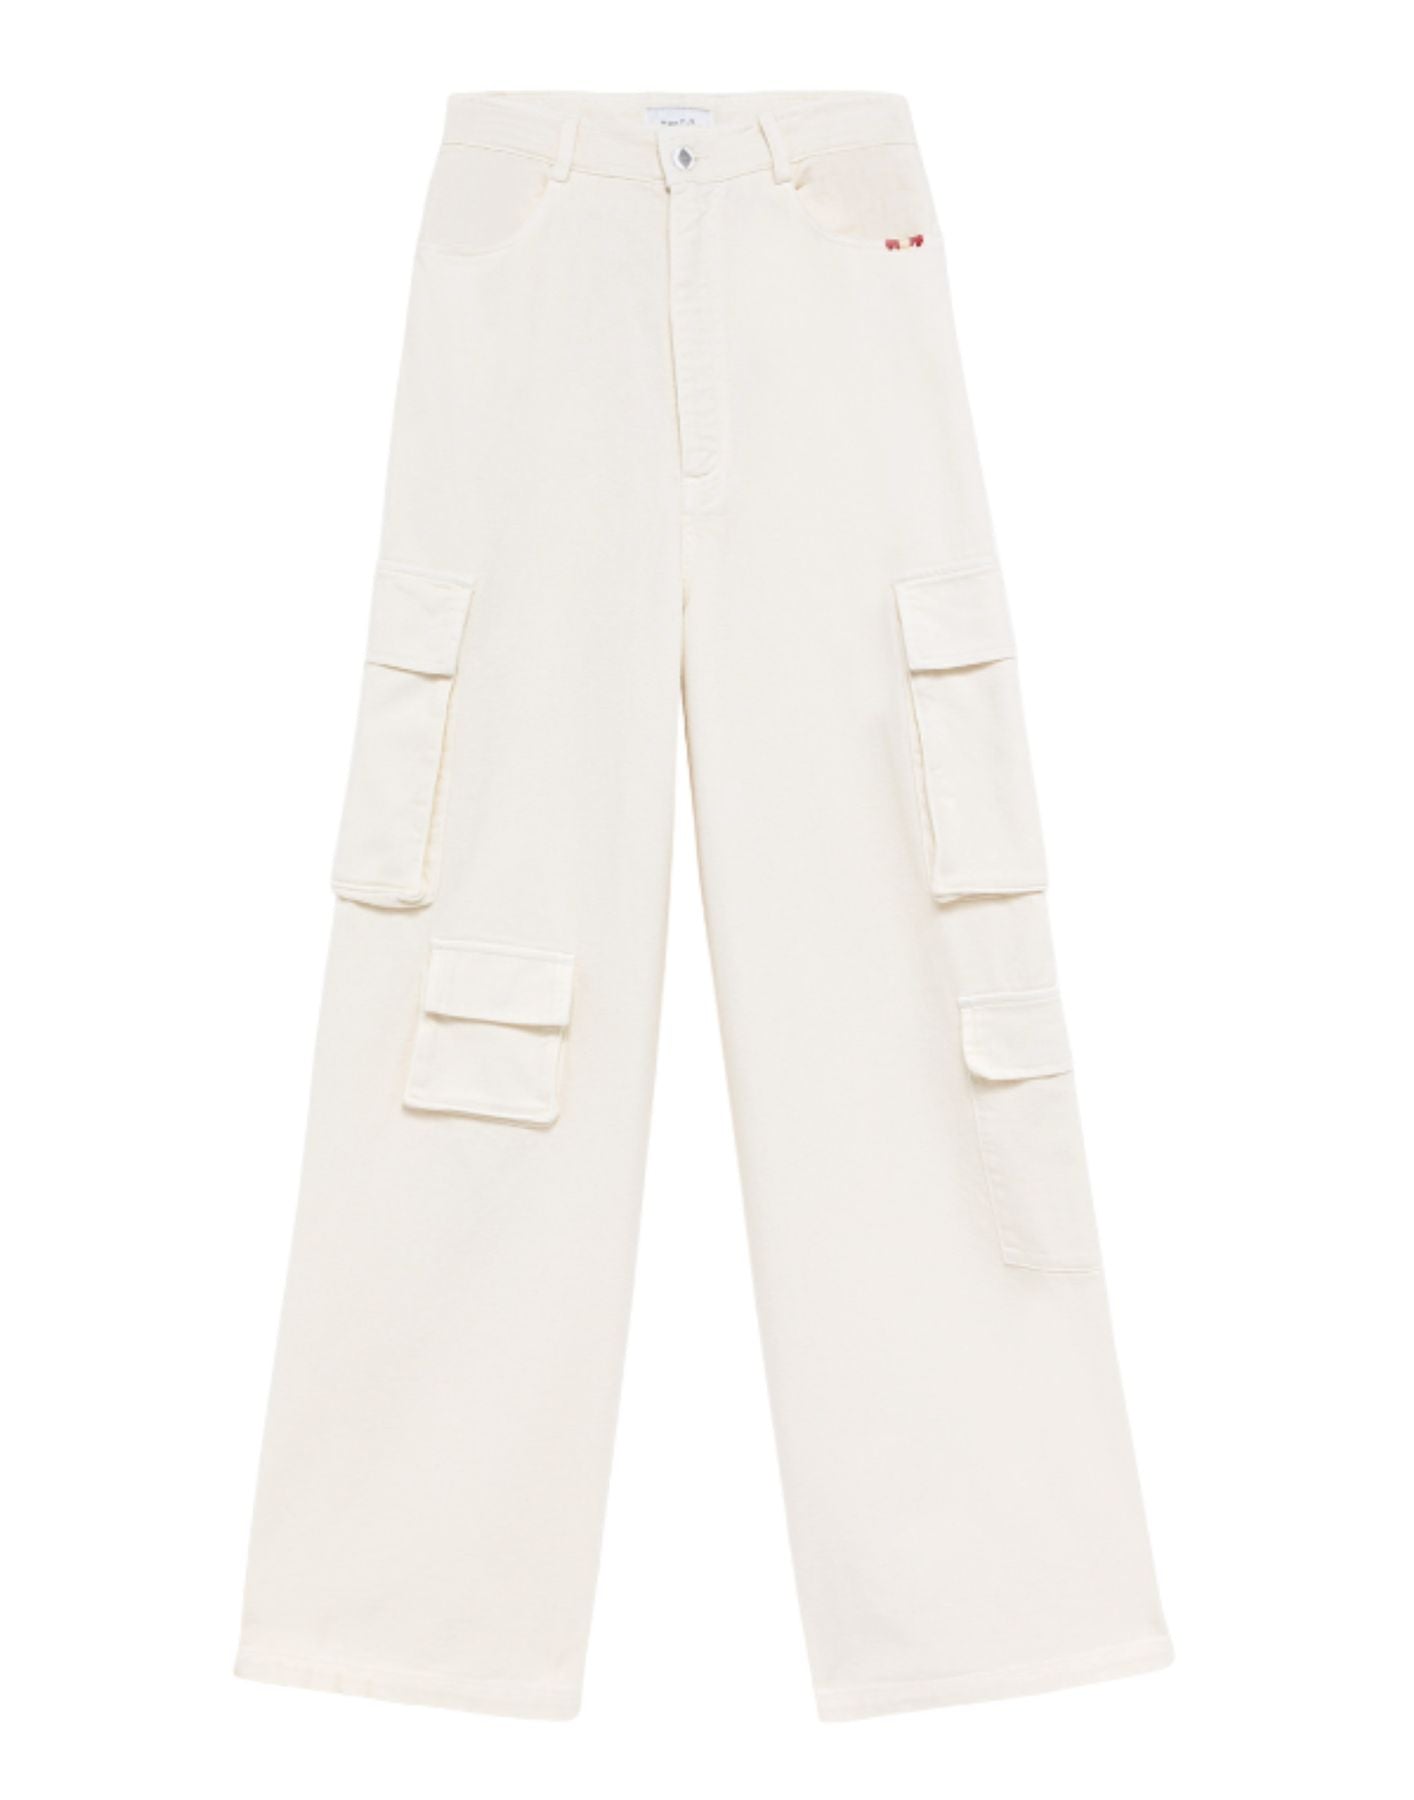 Jeans pour femme AMD065P3200111 blanc Amish